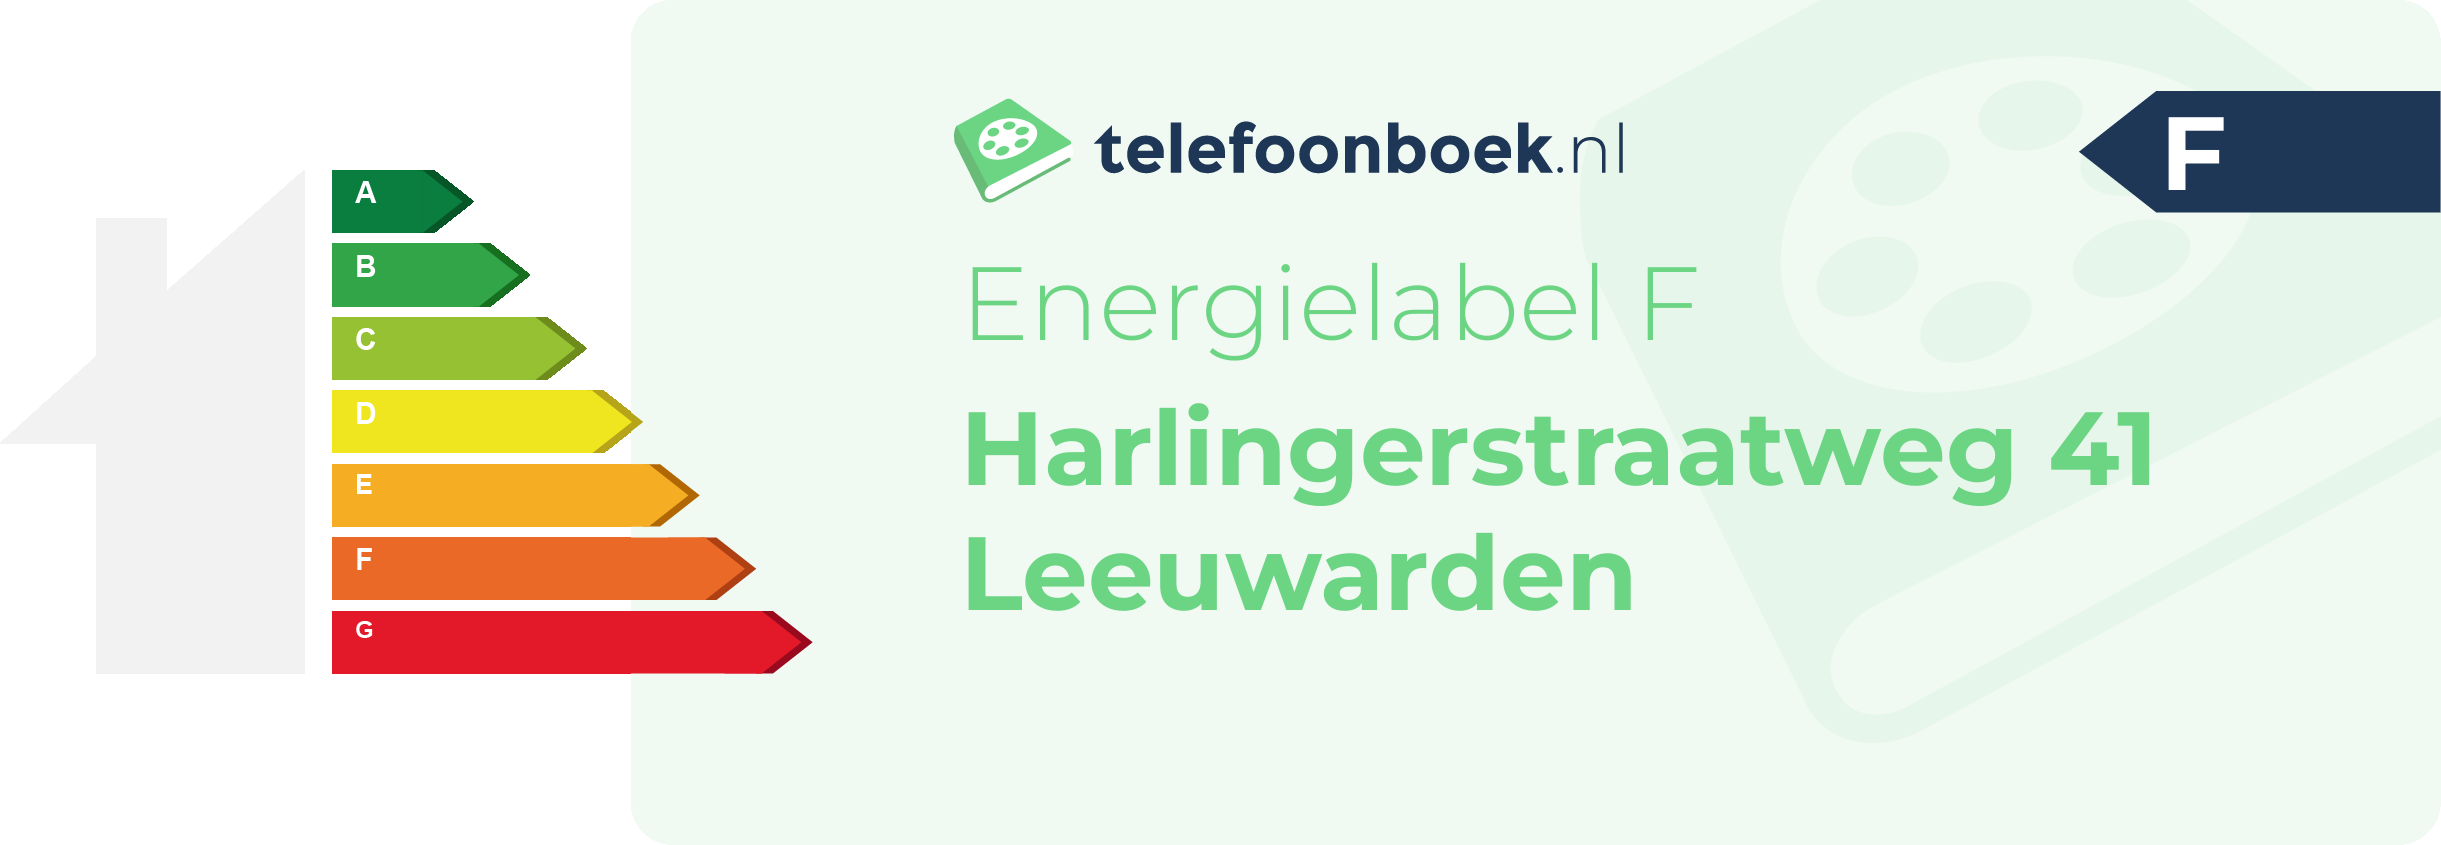 Energielabel Harlingerstraatweg 41 Leeuwarden